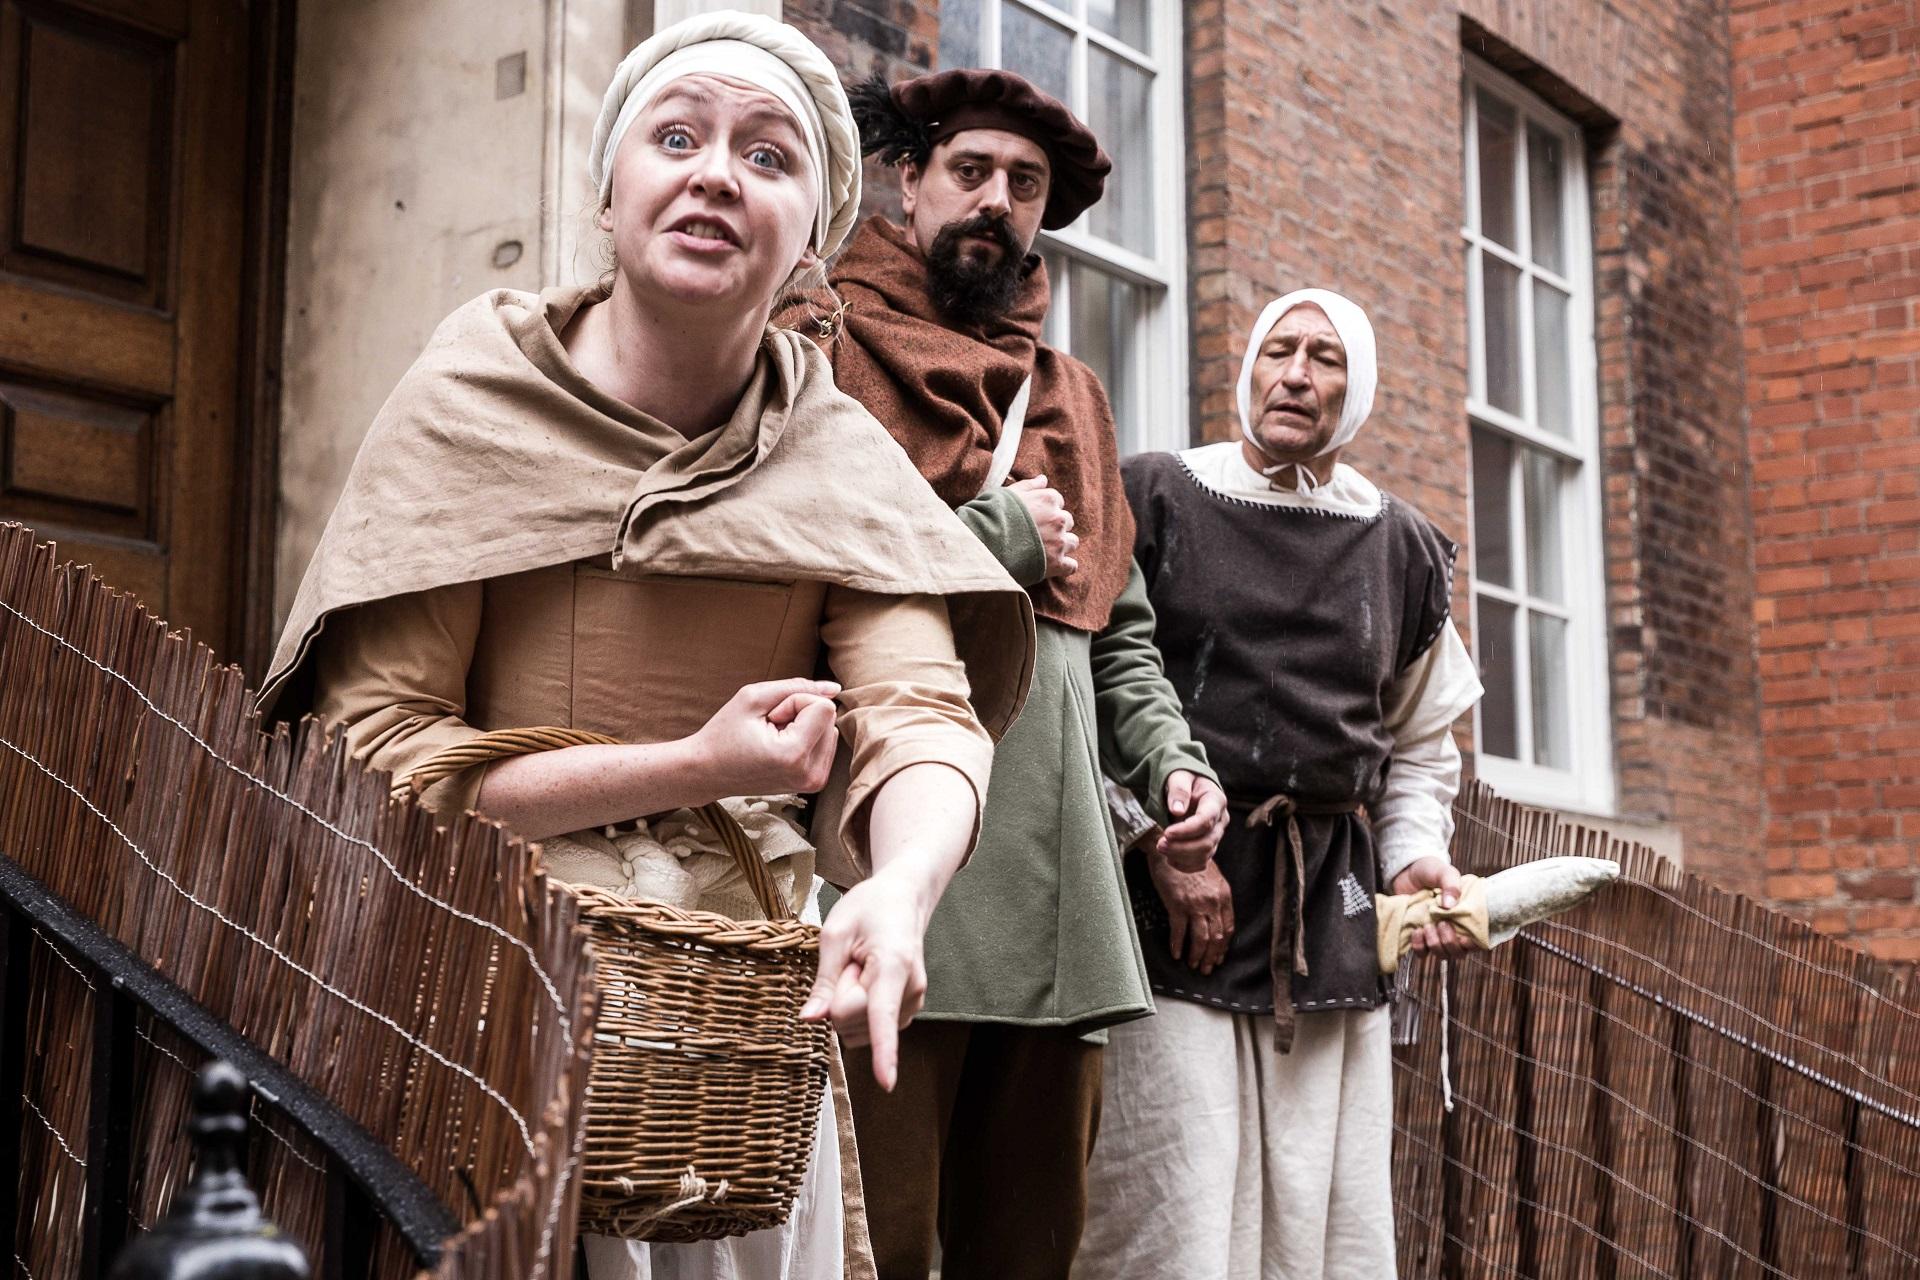 3 people dressed in medieval costume.